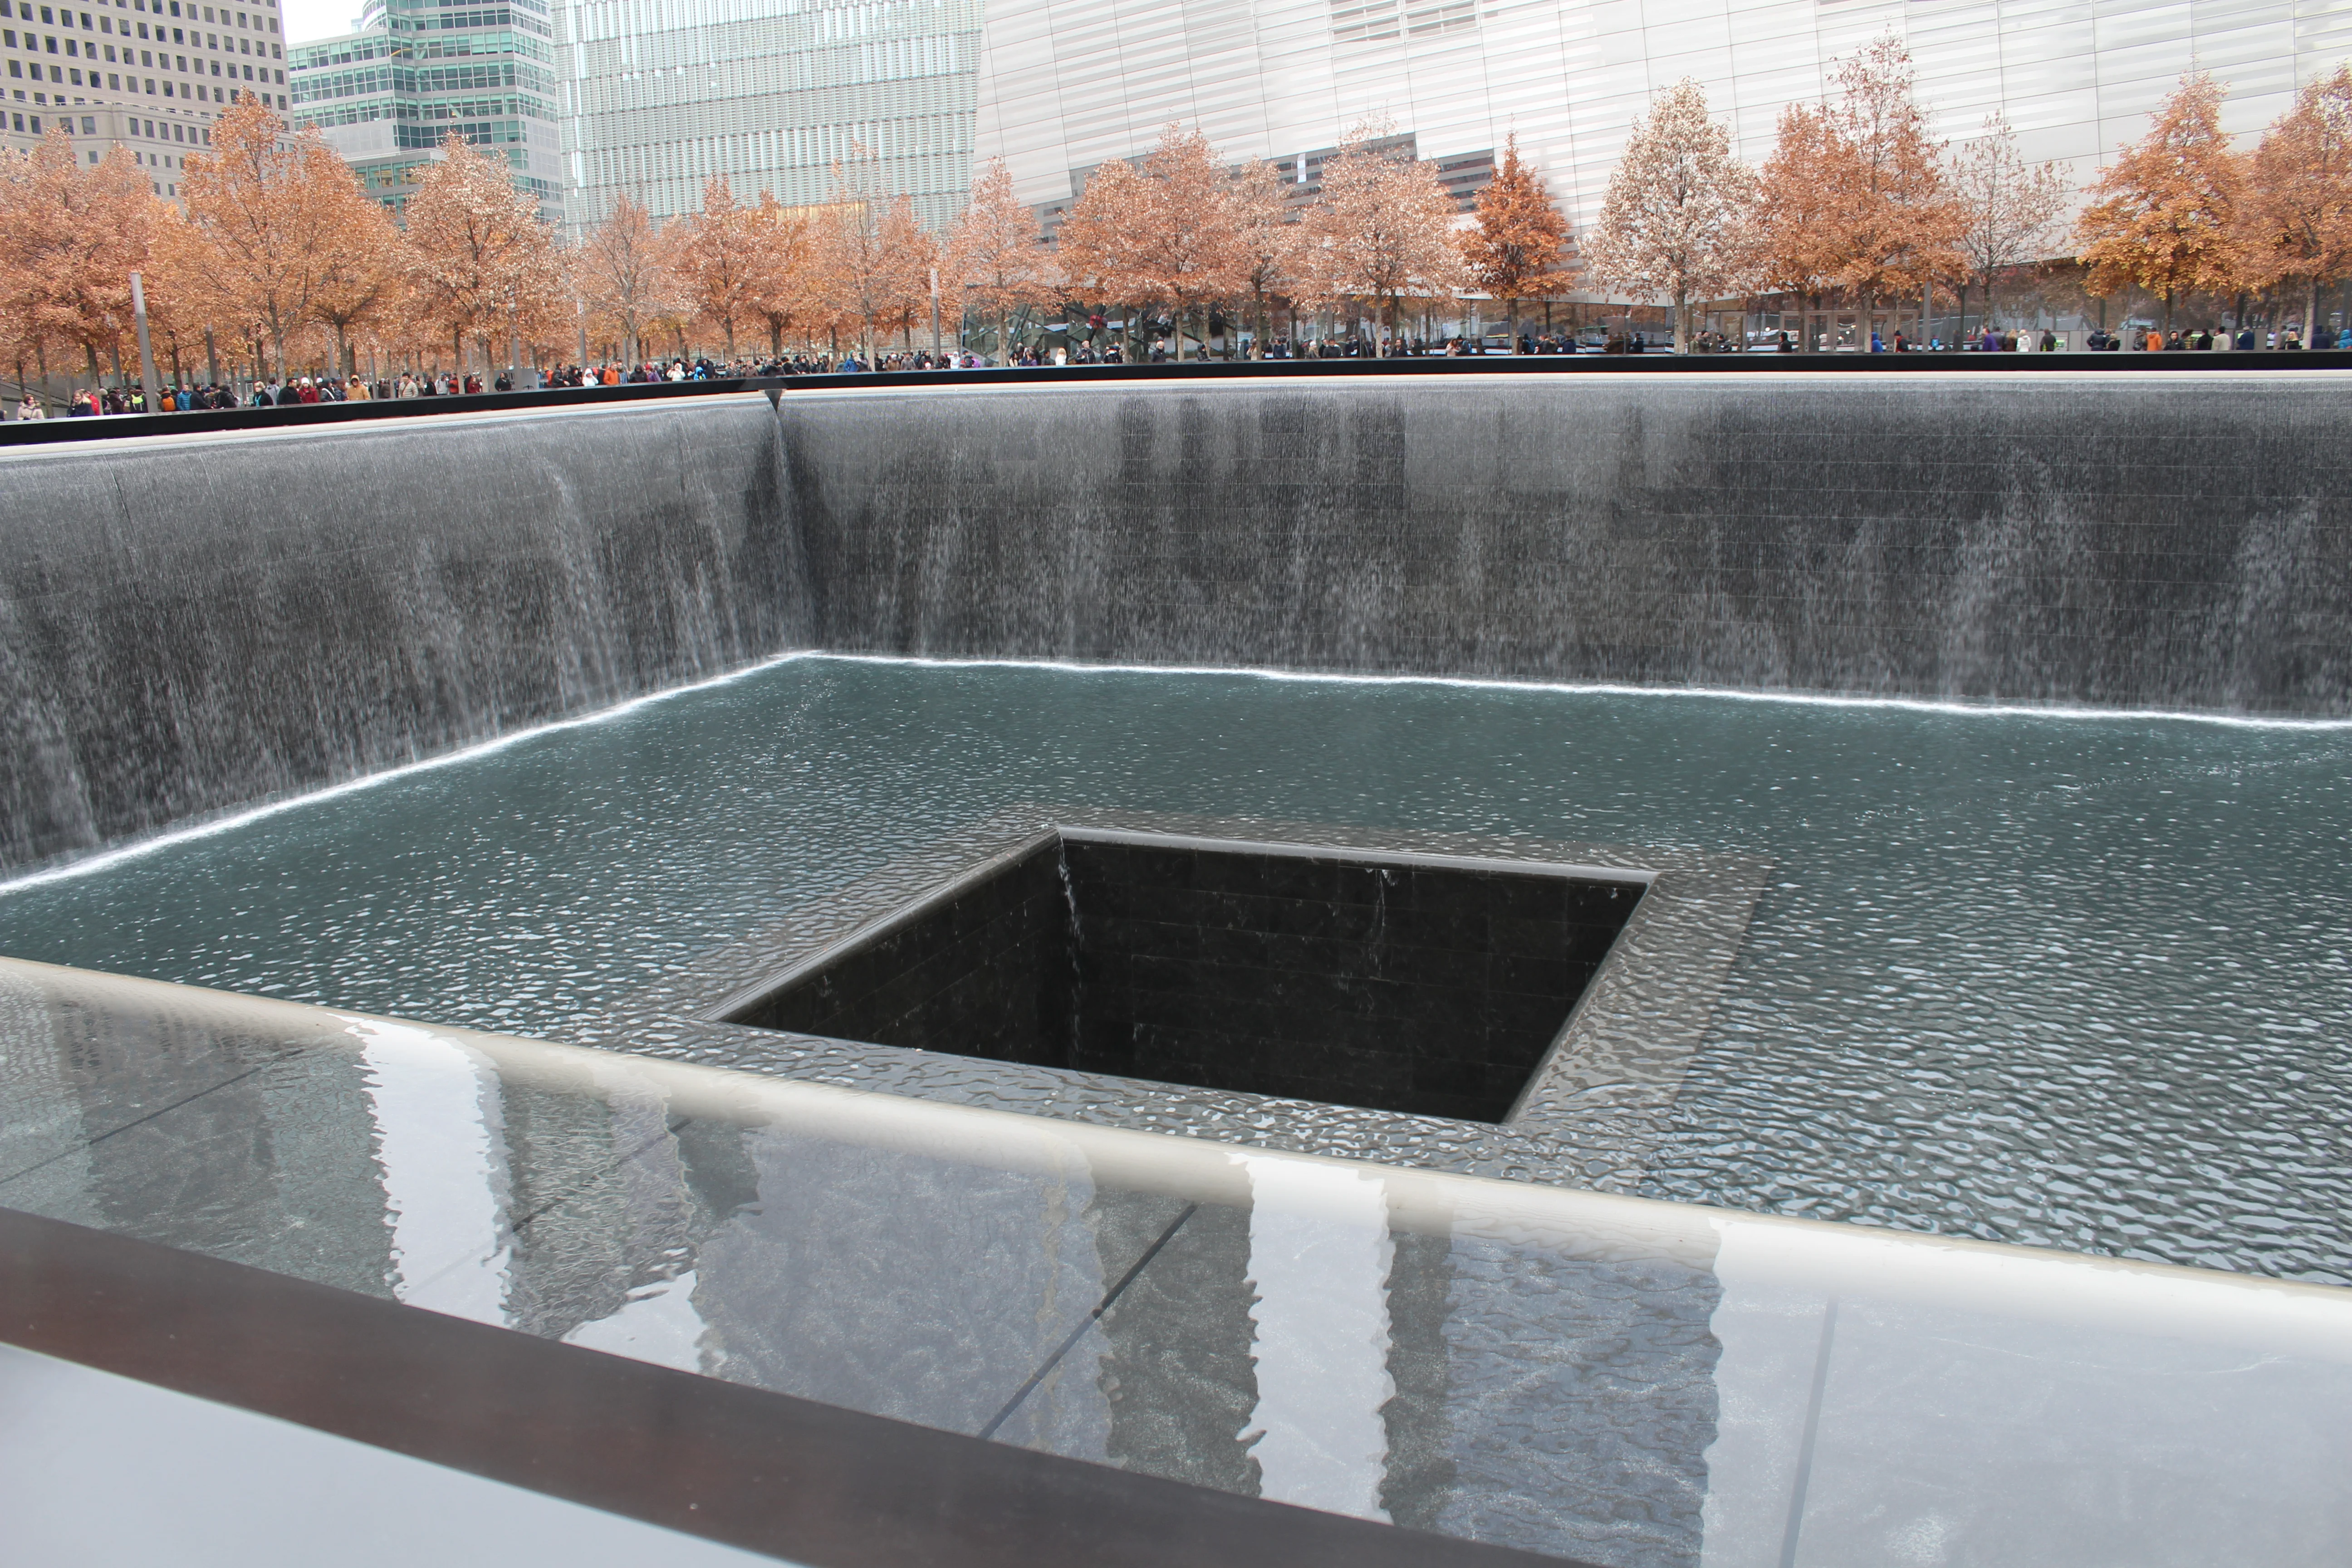 Pool at the 9/11 Memorial